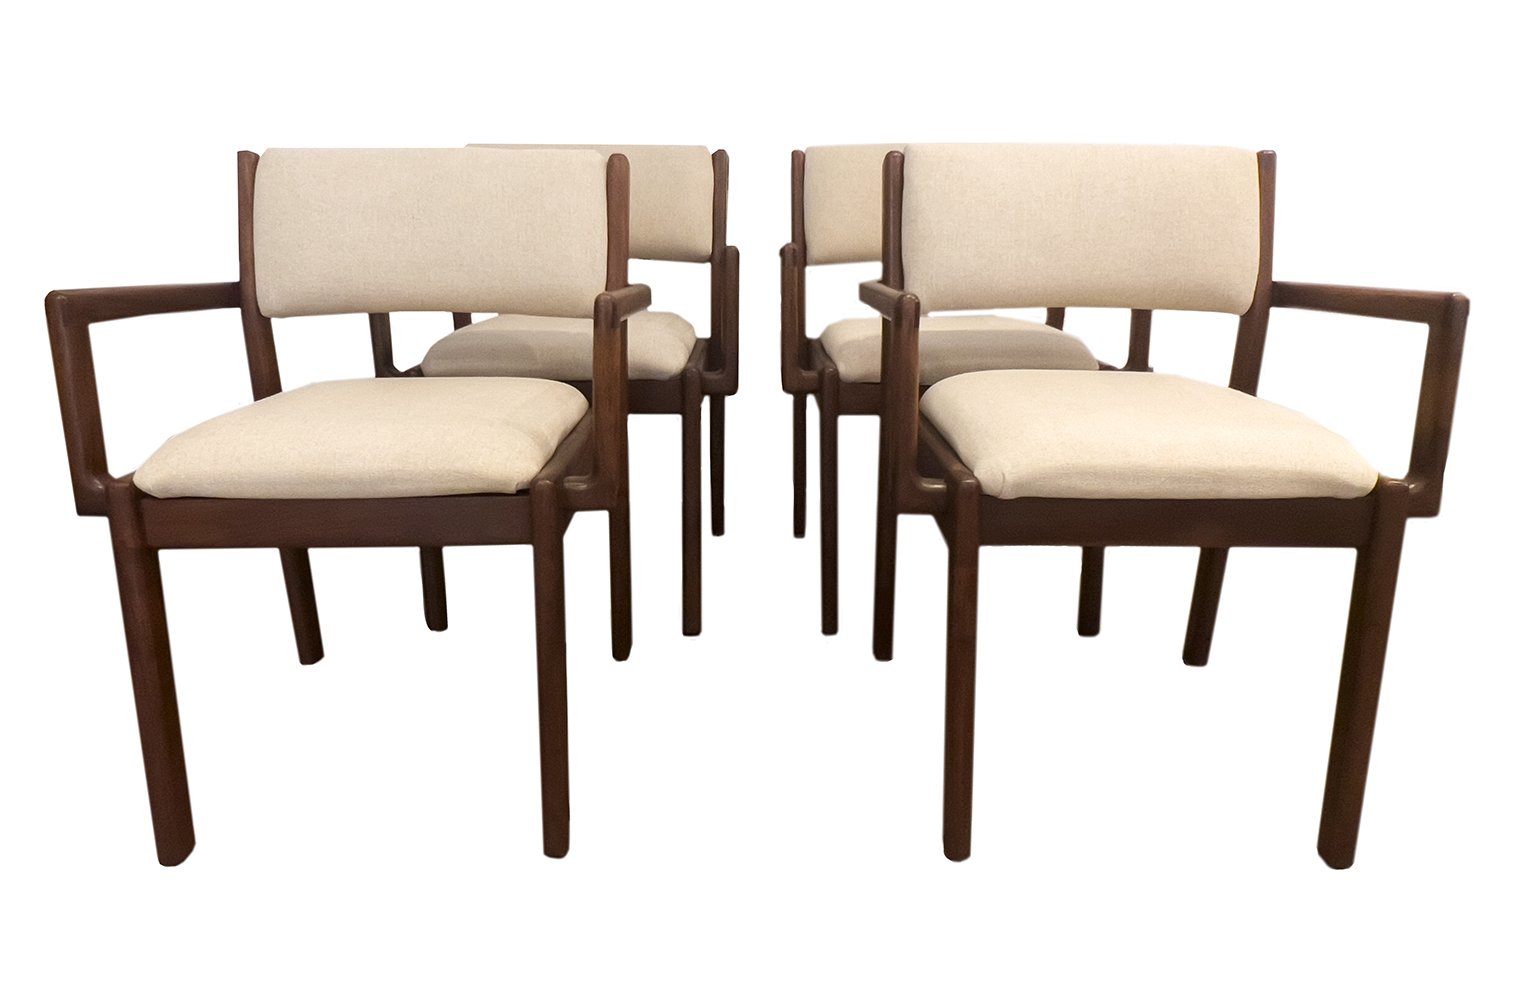 Walnut arm chairs: $2200